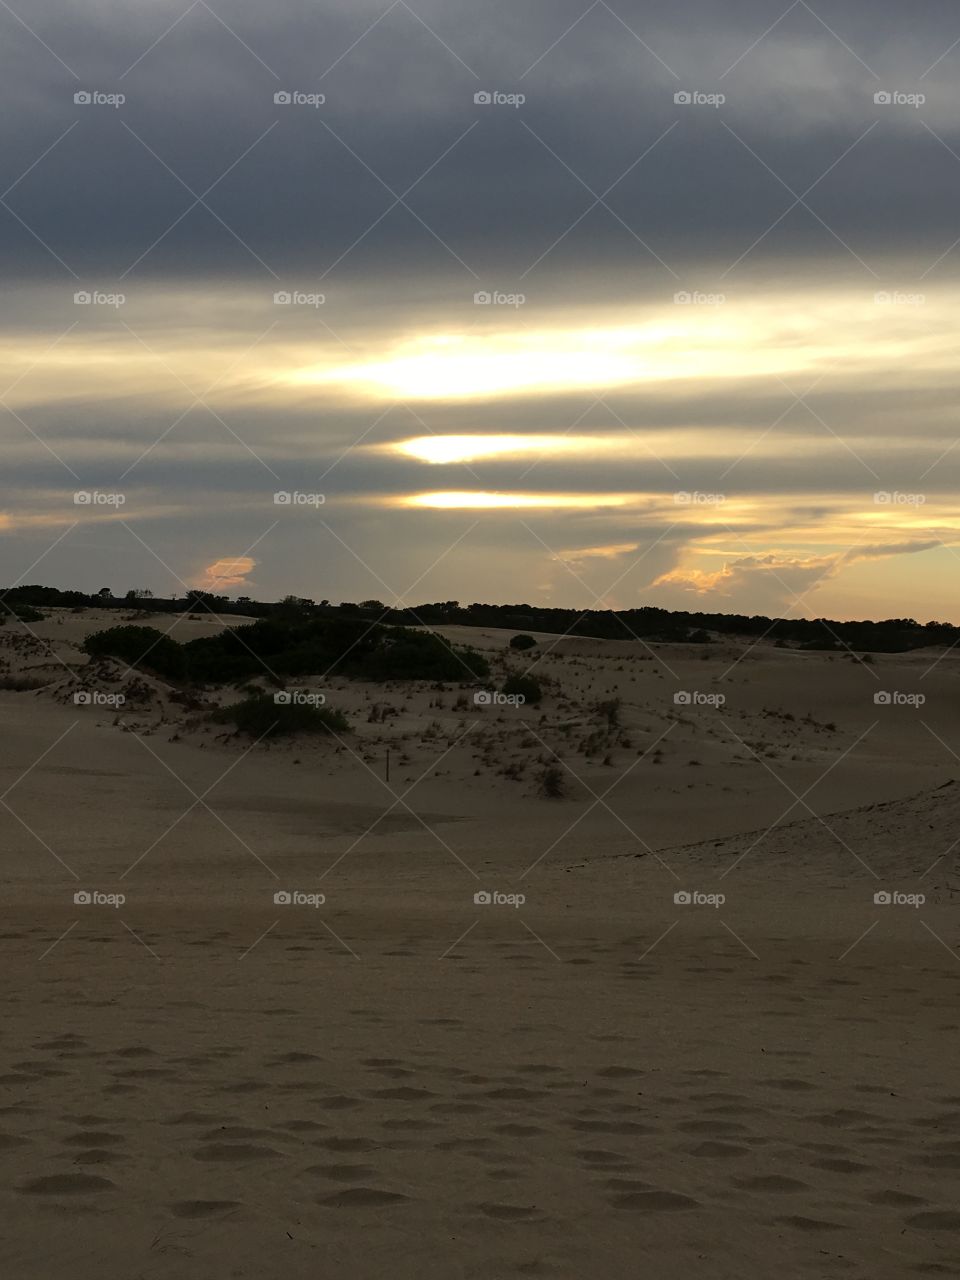 Sunset on sand dunes 